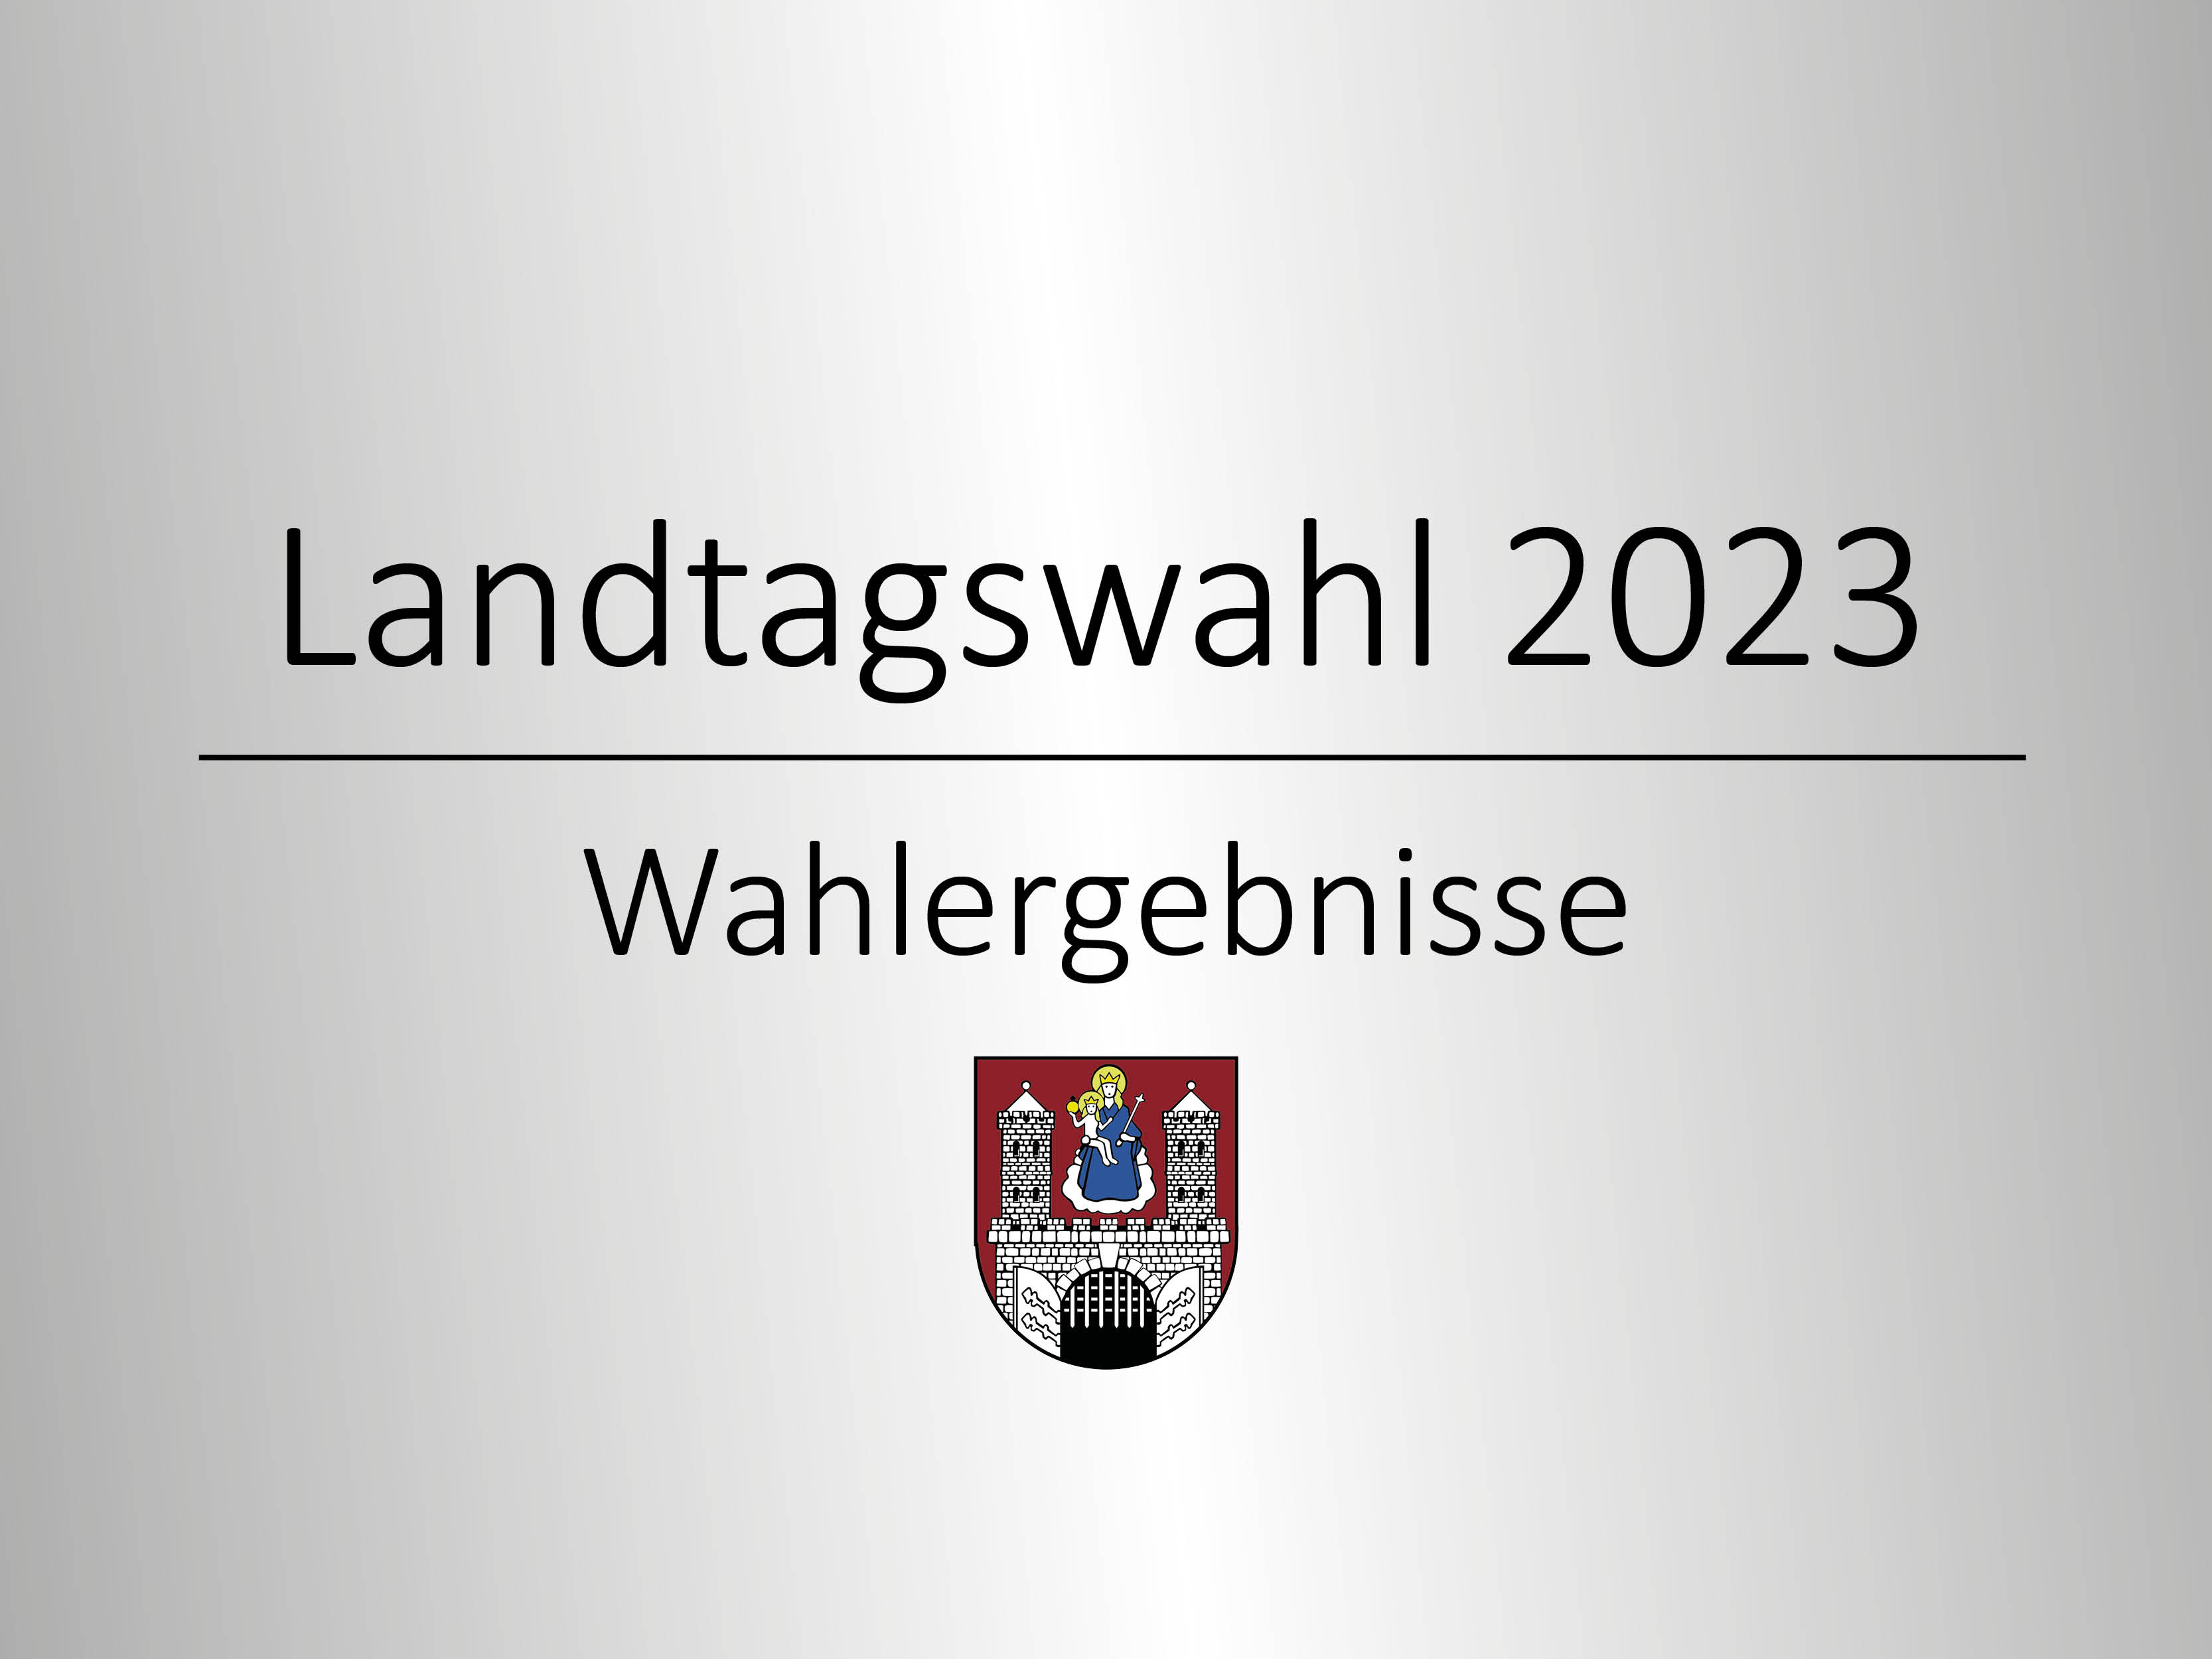 Landtagswahl 2023.jpg